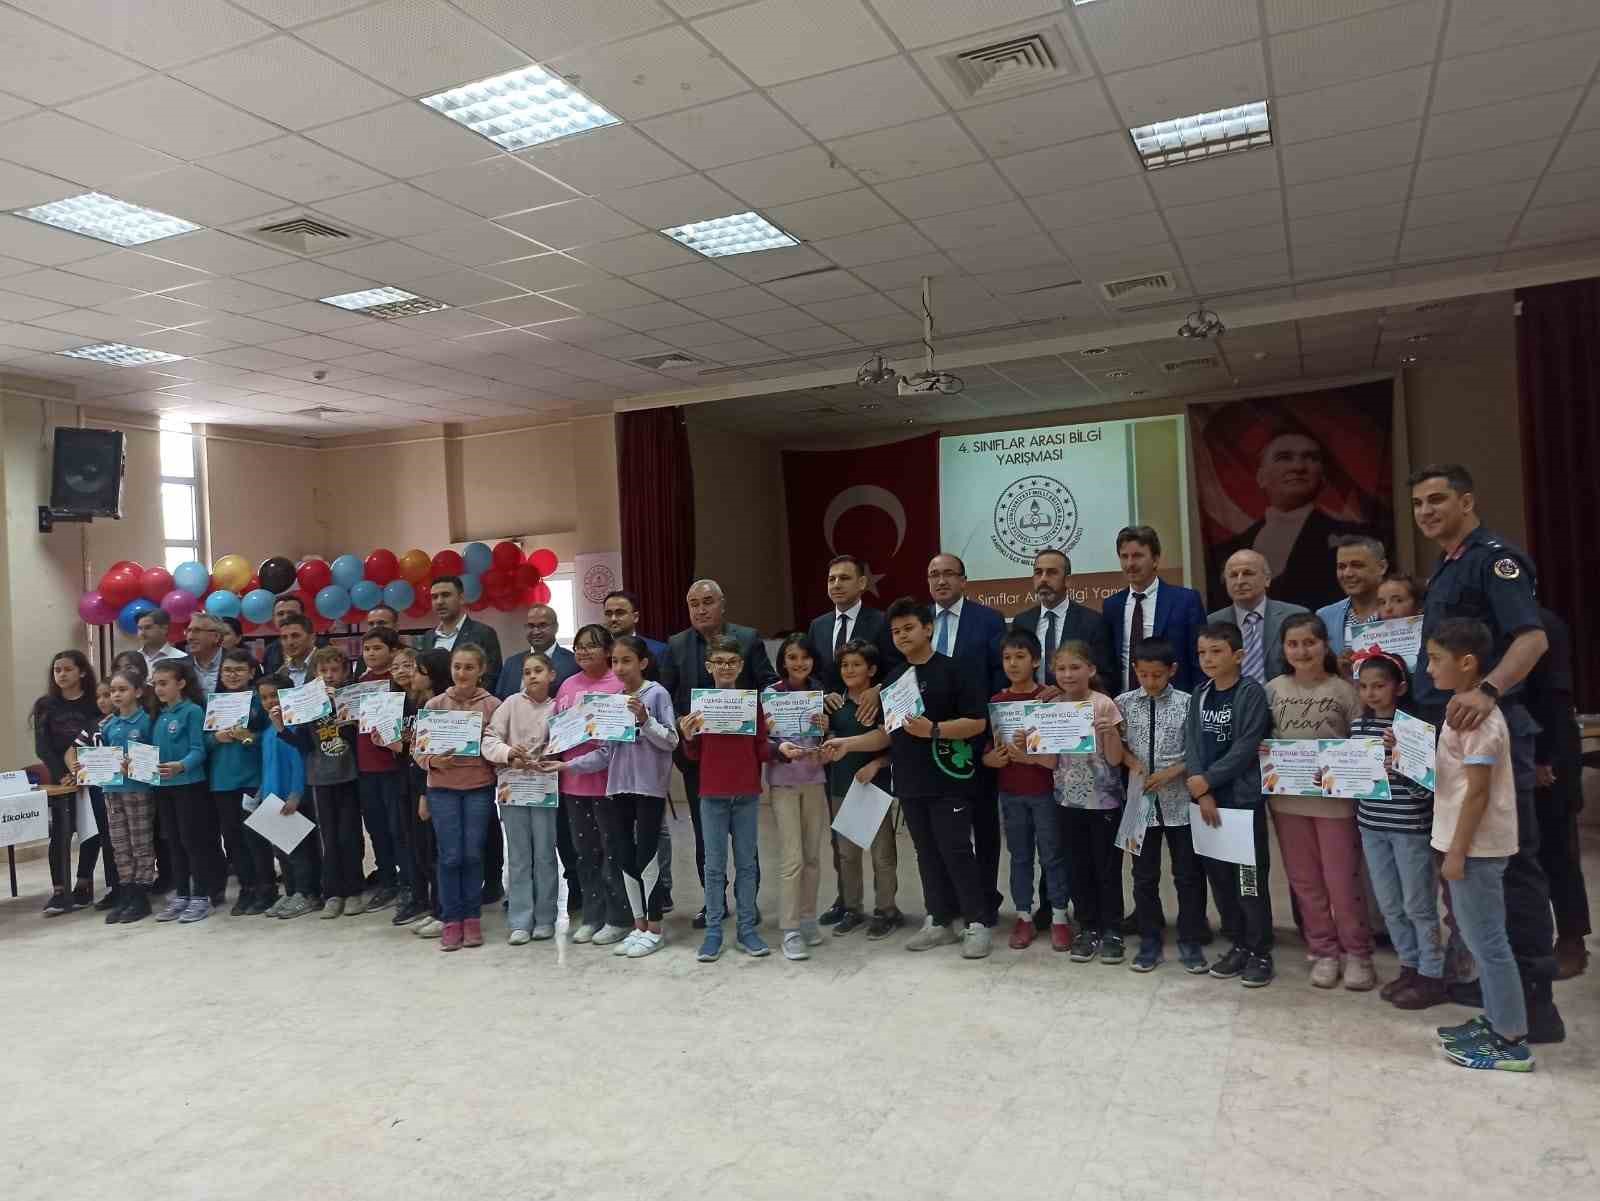 Miralay Reşatbey İlkokulu bilgi yarışmasında birinci oldu